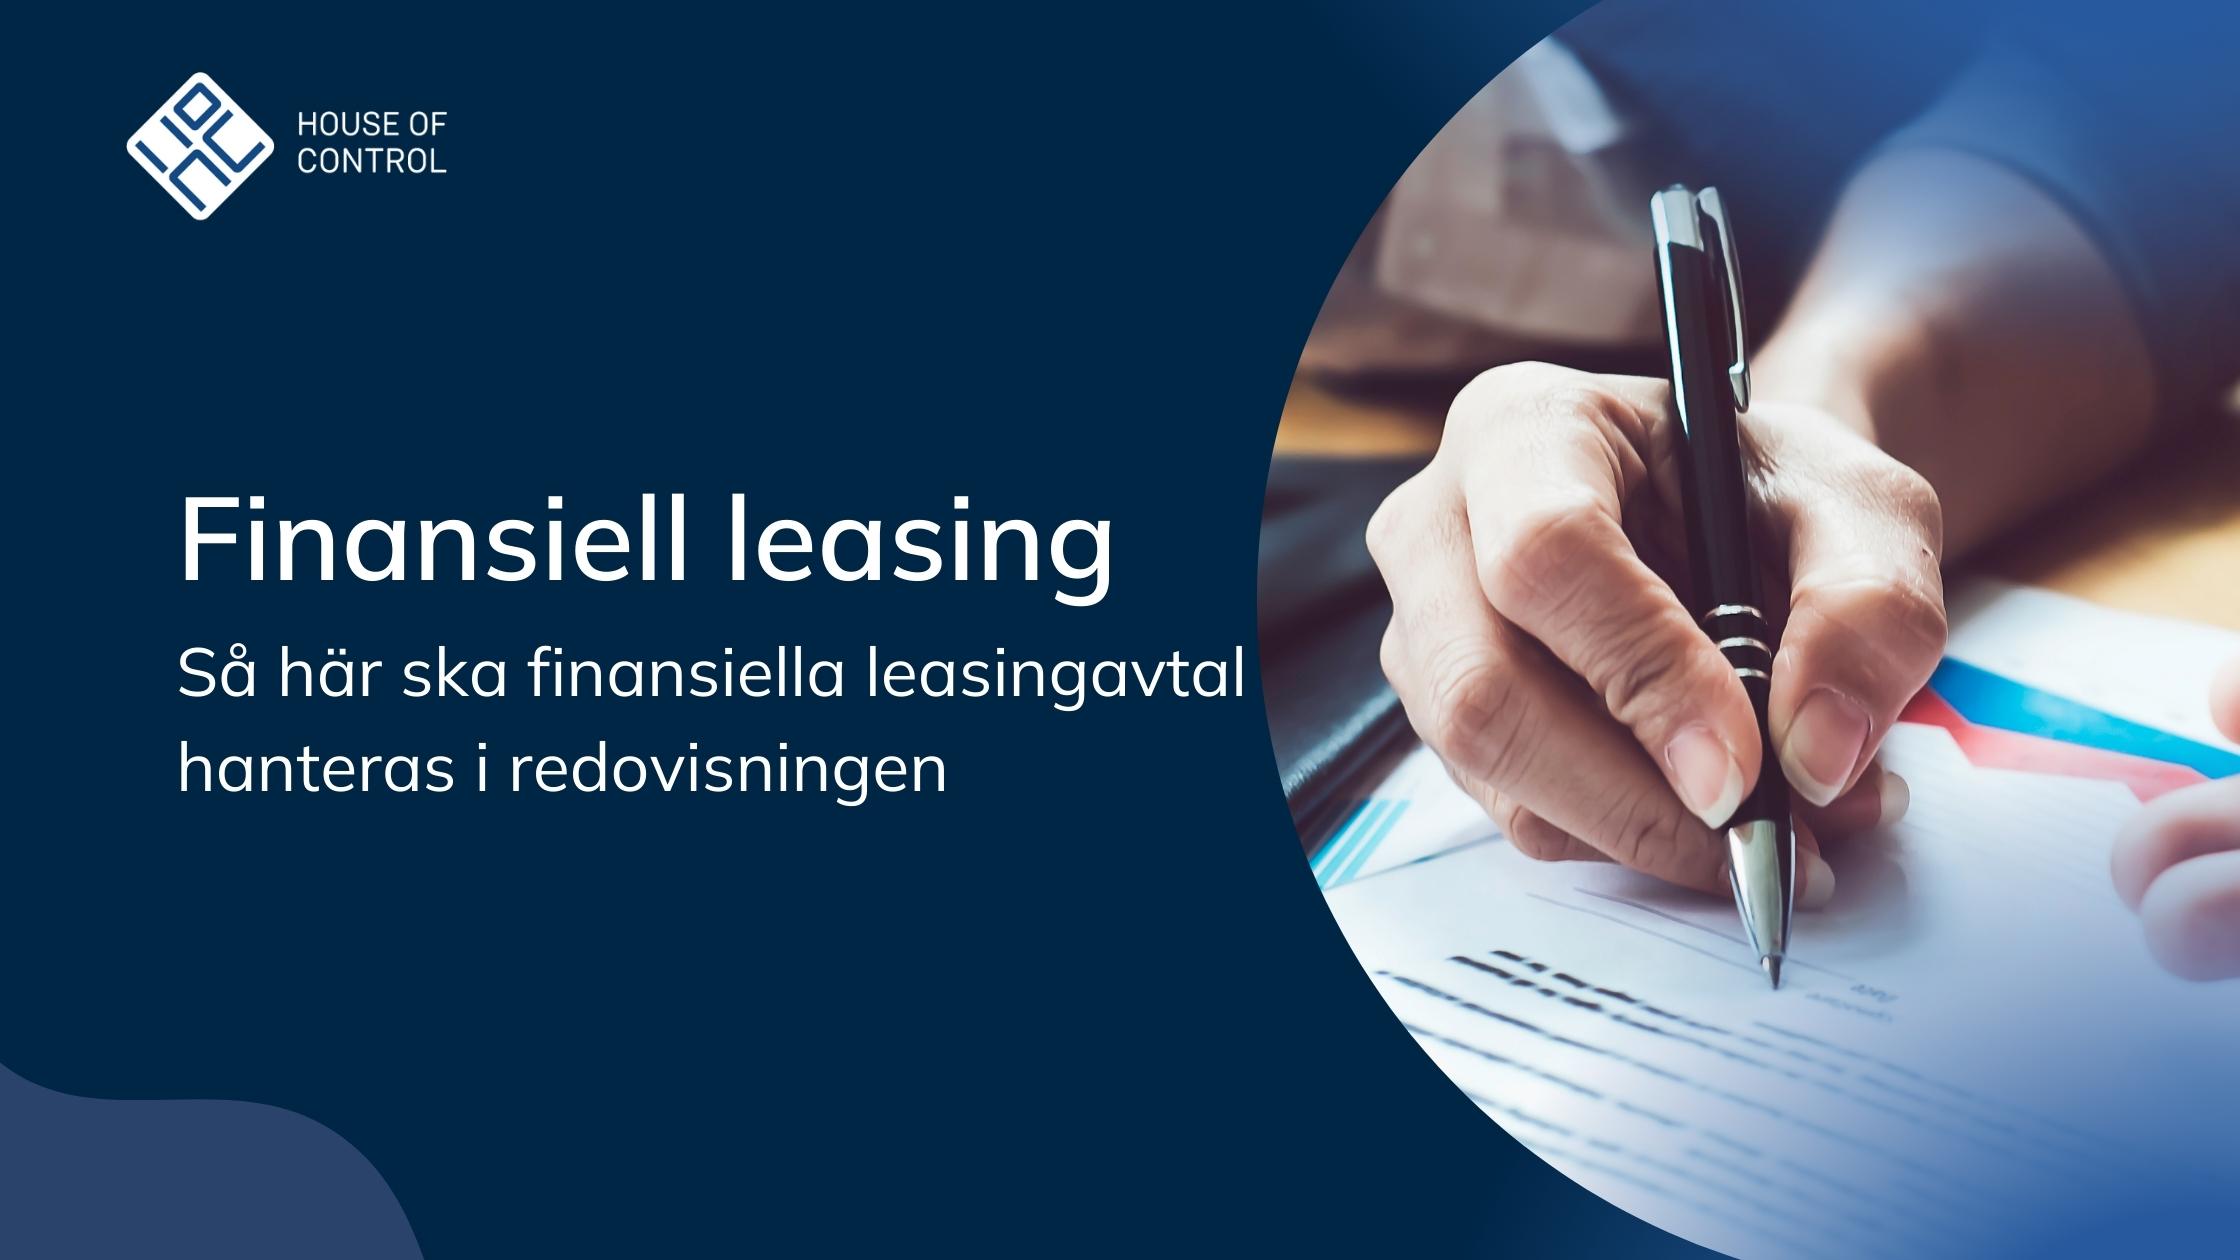 Finansiell leasing - Så här ska finansiella leasingavtal hanteras i redovisningen